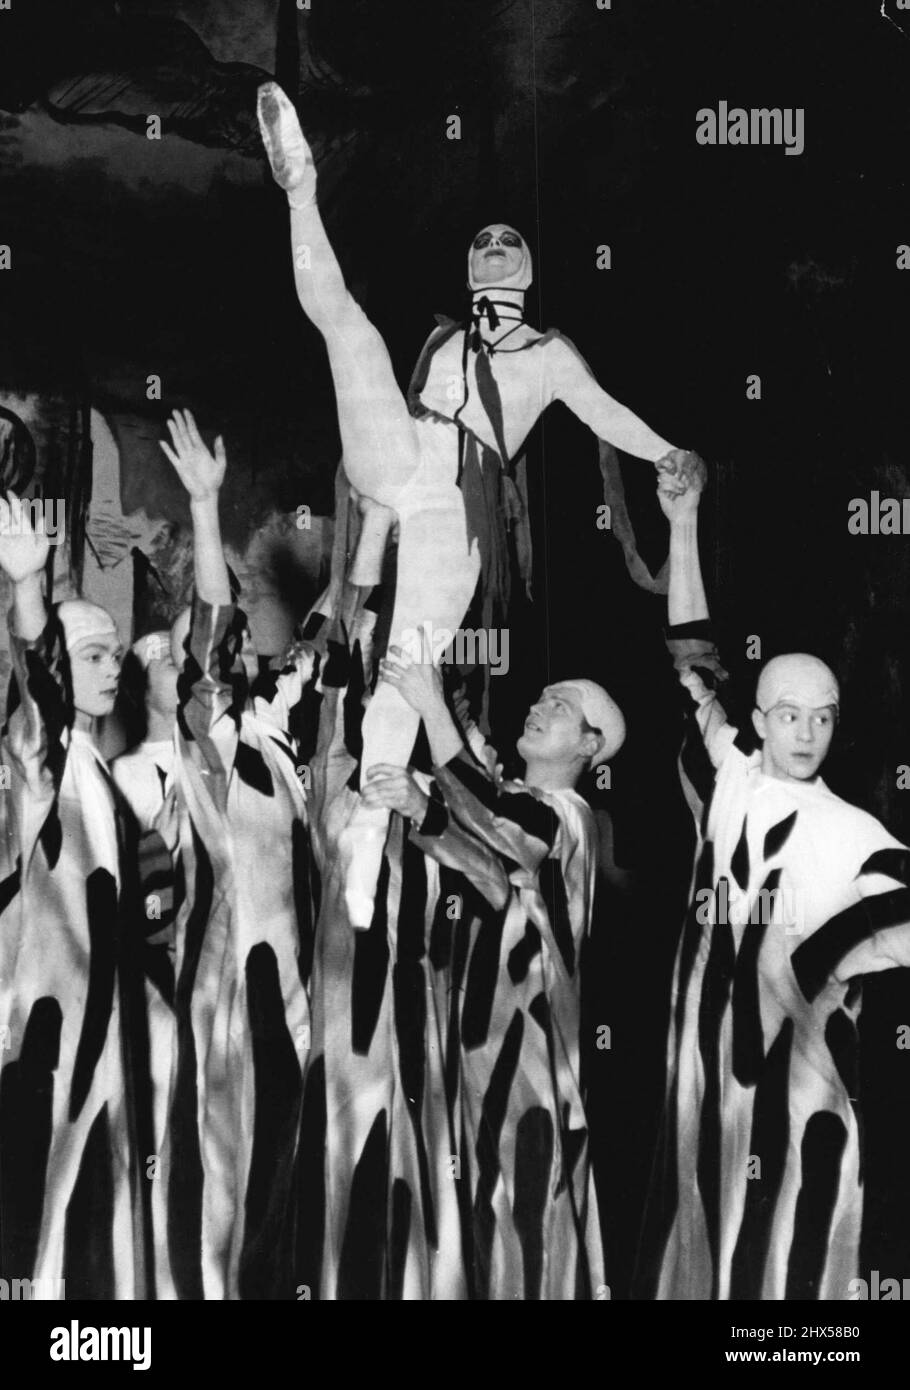 Danse des Furies - cette scène impressionnante montre la danse des Furies à Hadies, avec Ballerina July Drapal comme fureur de tête. C'est à partir de la nouvelle production du Ballet de l'Opéra de Vienne "orpheus" D'IGOR strawinski que le compositeur a écrit après la guerre à l'instigation de George Balanchine, le célèbre chorégraphe. Le ballet, qui a été produit pour la première fois en 1948 à New York, suit l'histoire bien connue d'Orpheus et d'Eurydike, et possède de nombreuses scènes impressionnantes et une musique passionnante. 01 mai 1954. (Photo de Paul Popper, Paul Popper Ltd.). Banque D'Images